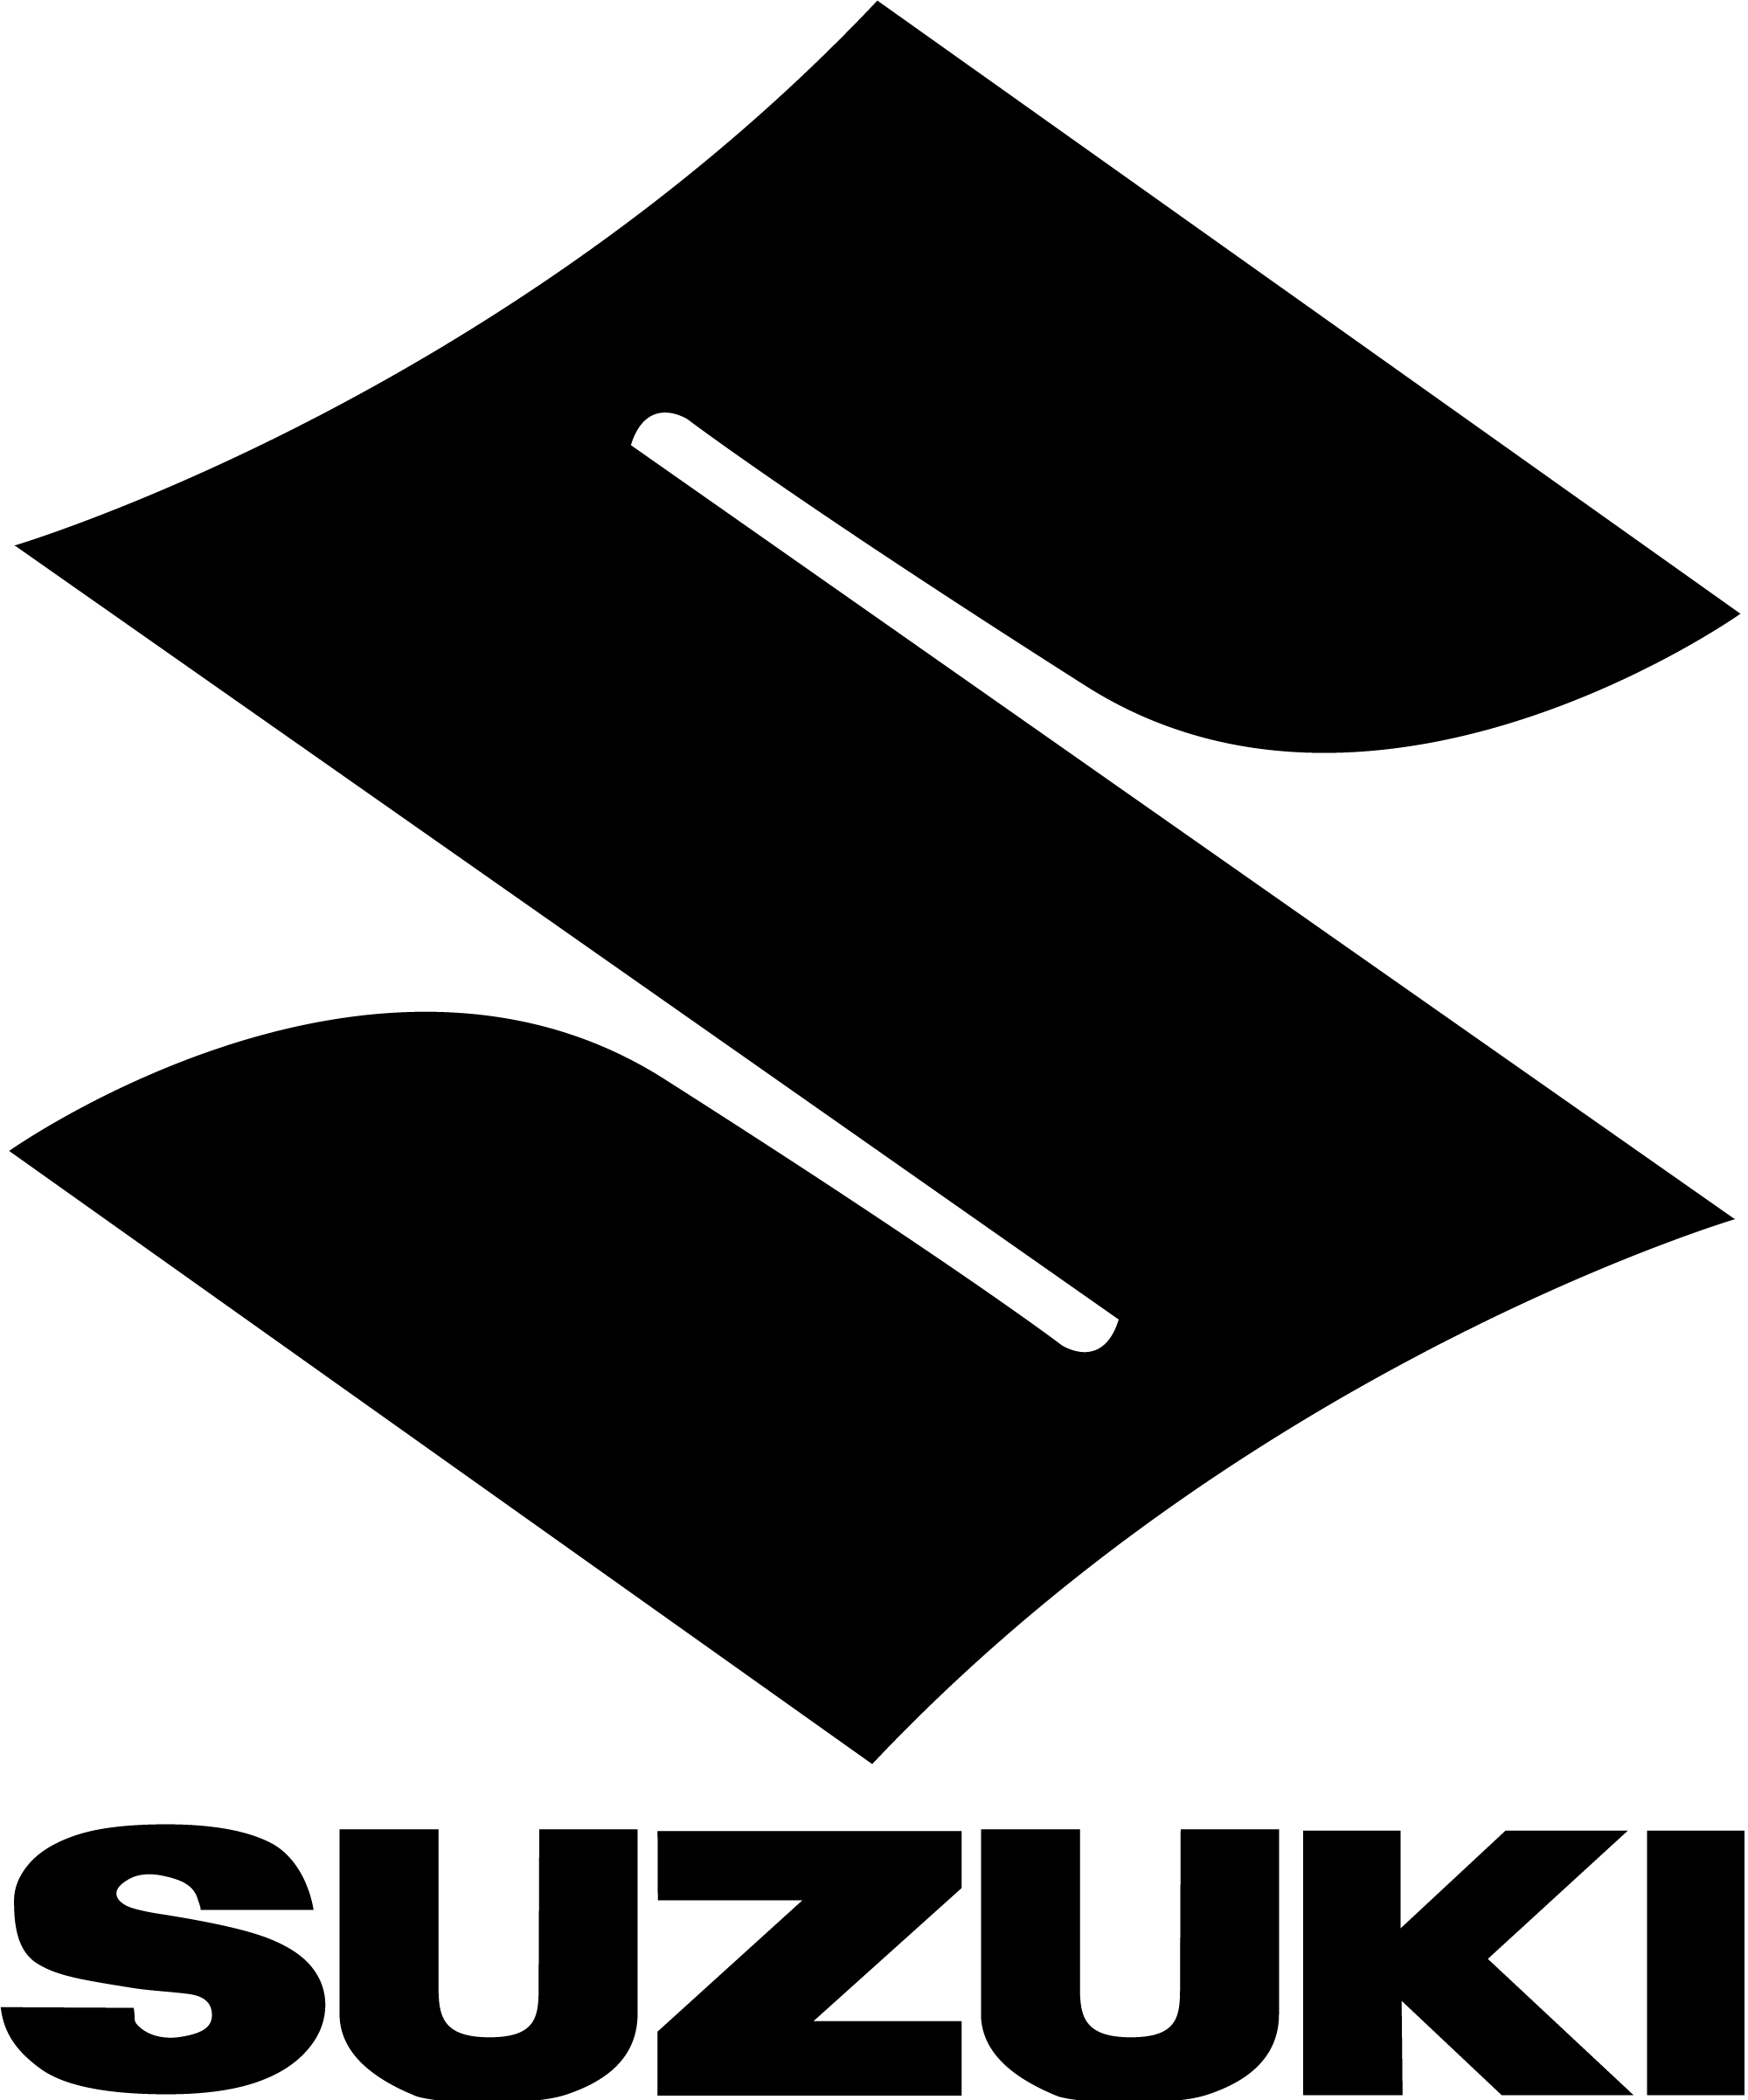 suzuki-logo-png-black